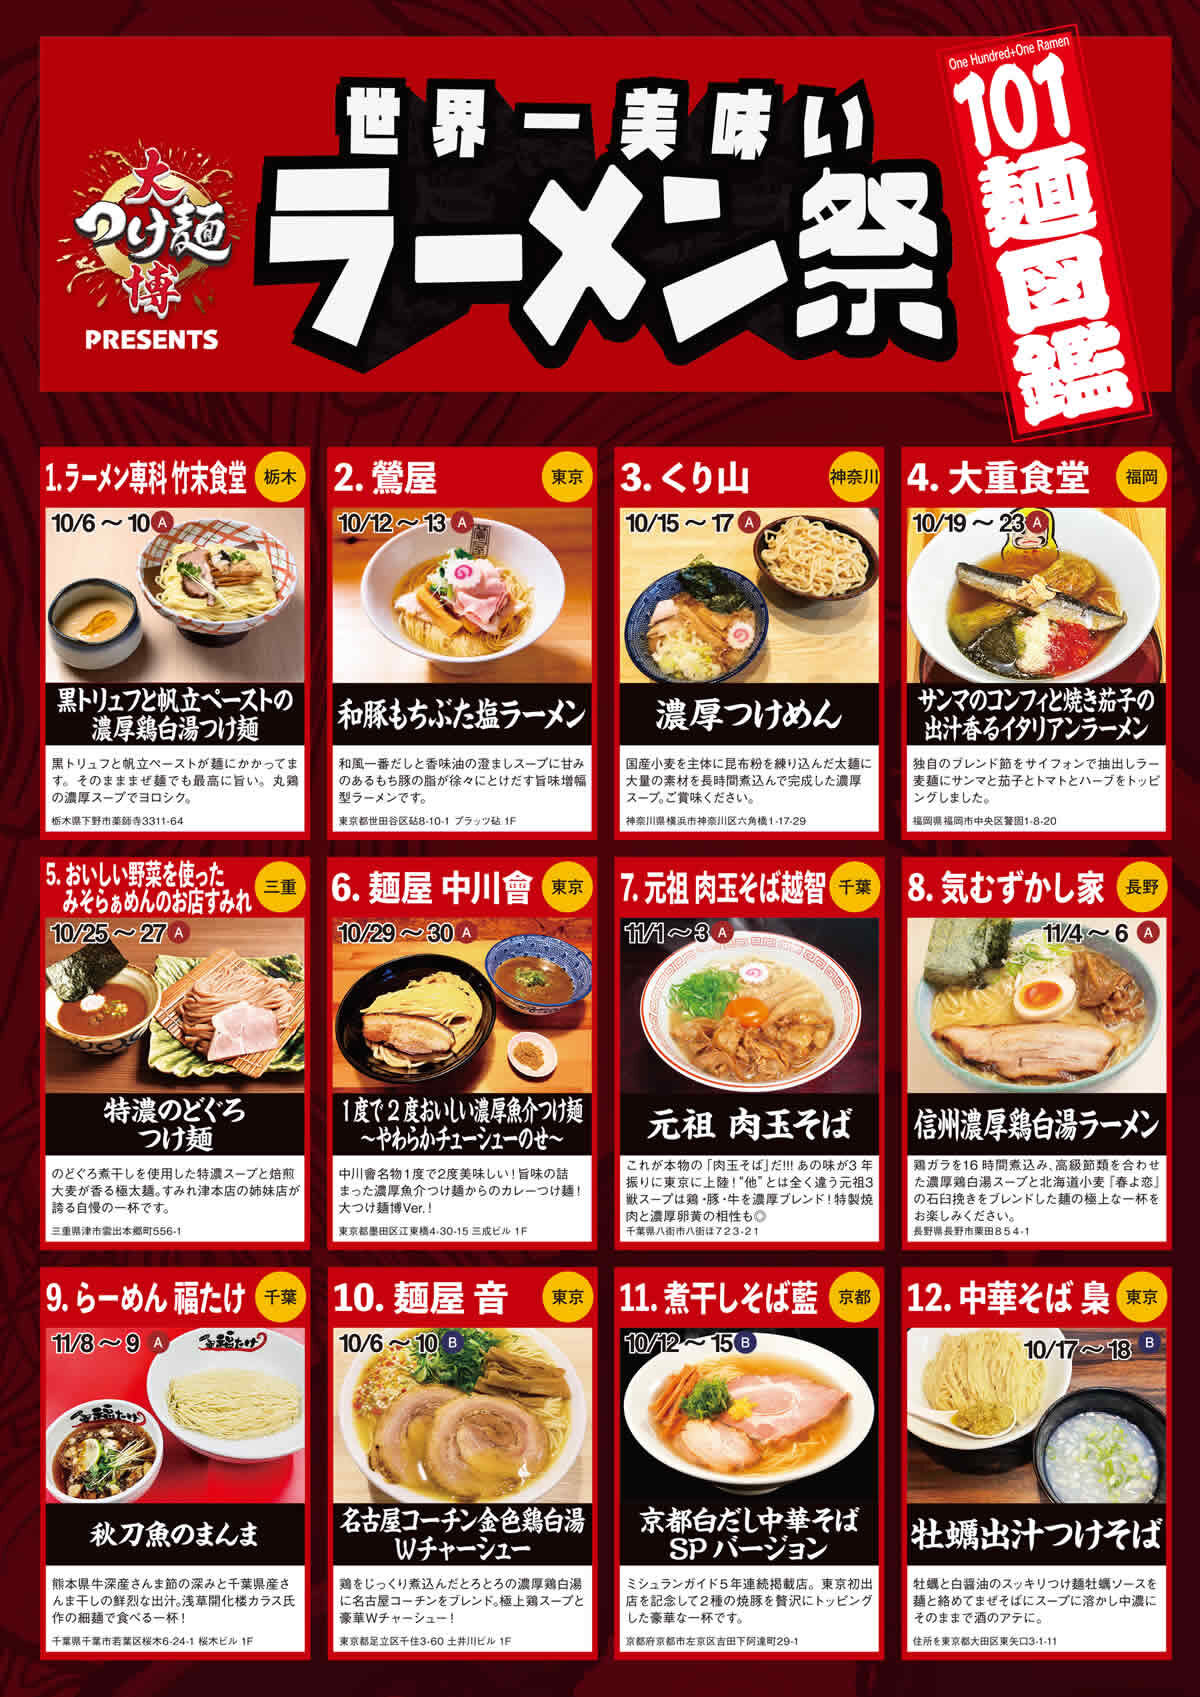 大つけ麺博 presents 世界一美味いラーメン祭 出店店舗とメニュー